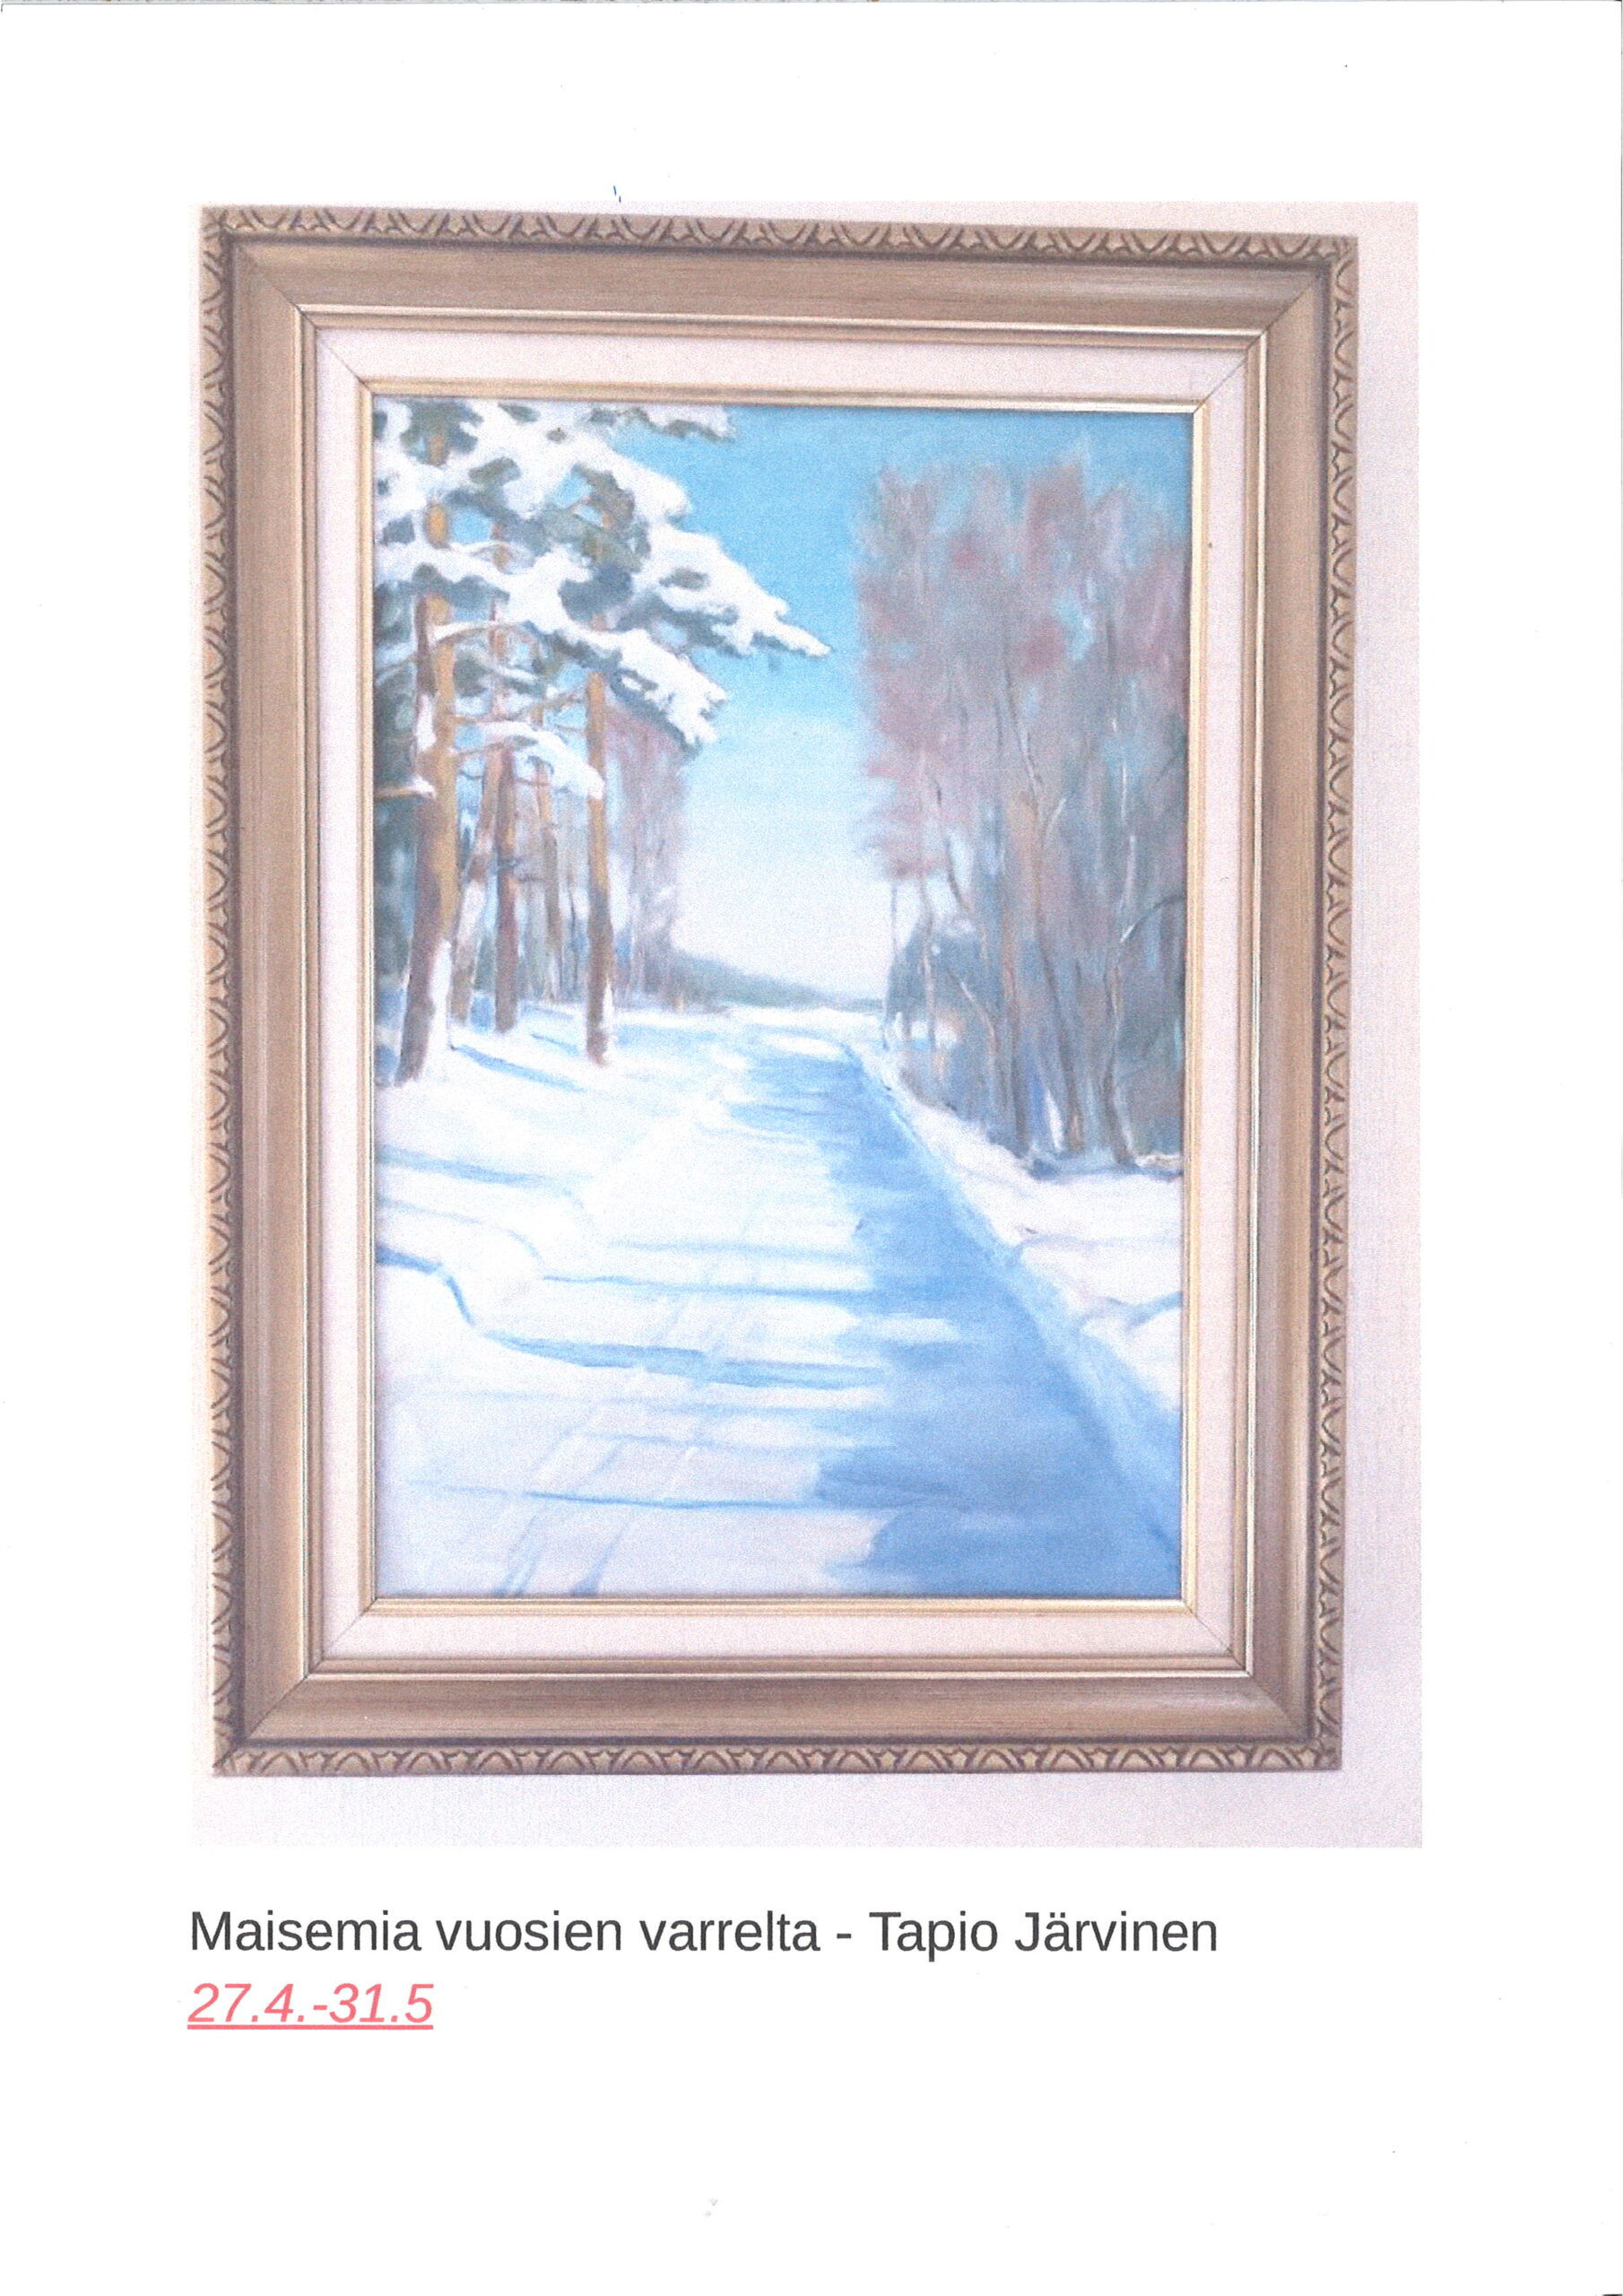 kuva maalauksesta, jossa on talvinen maisema